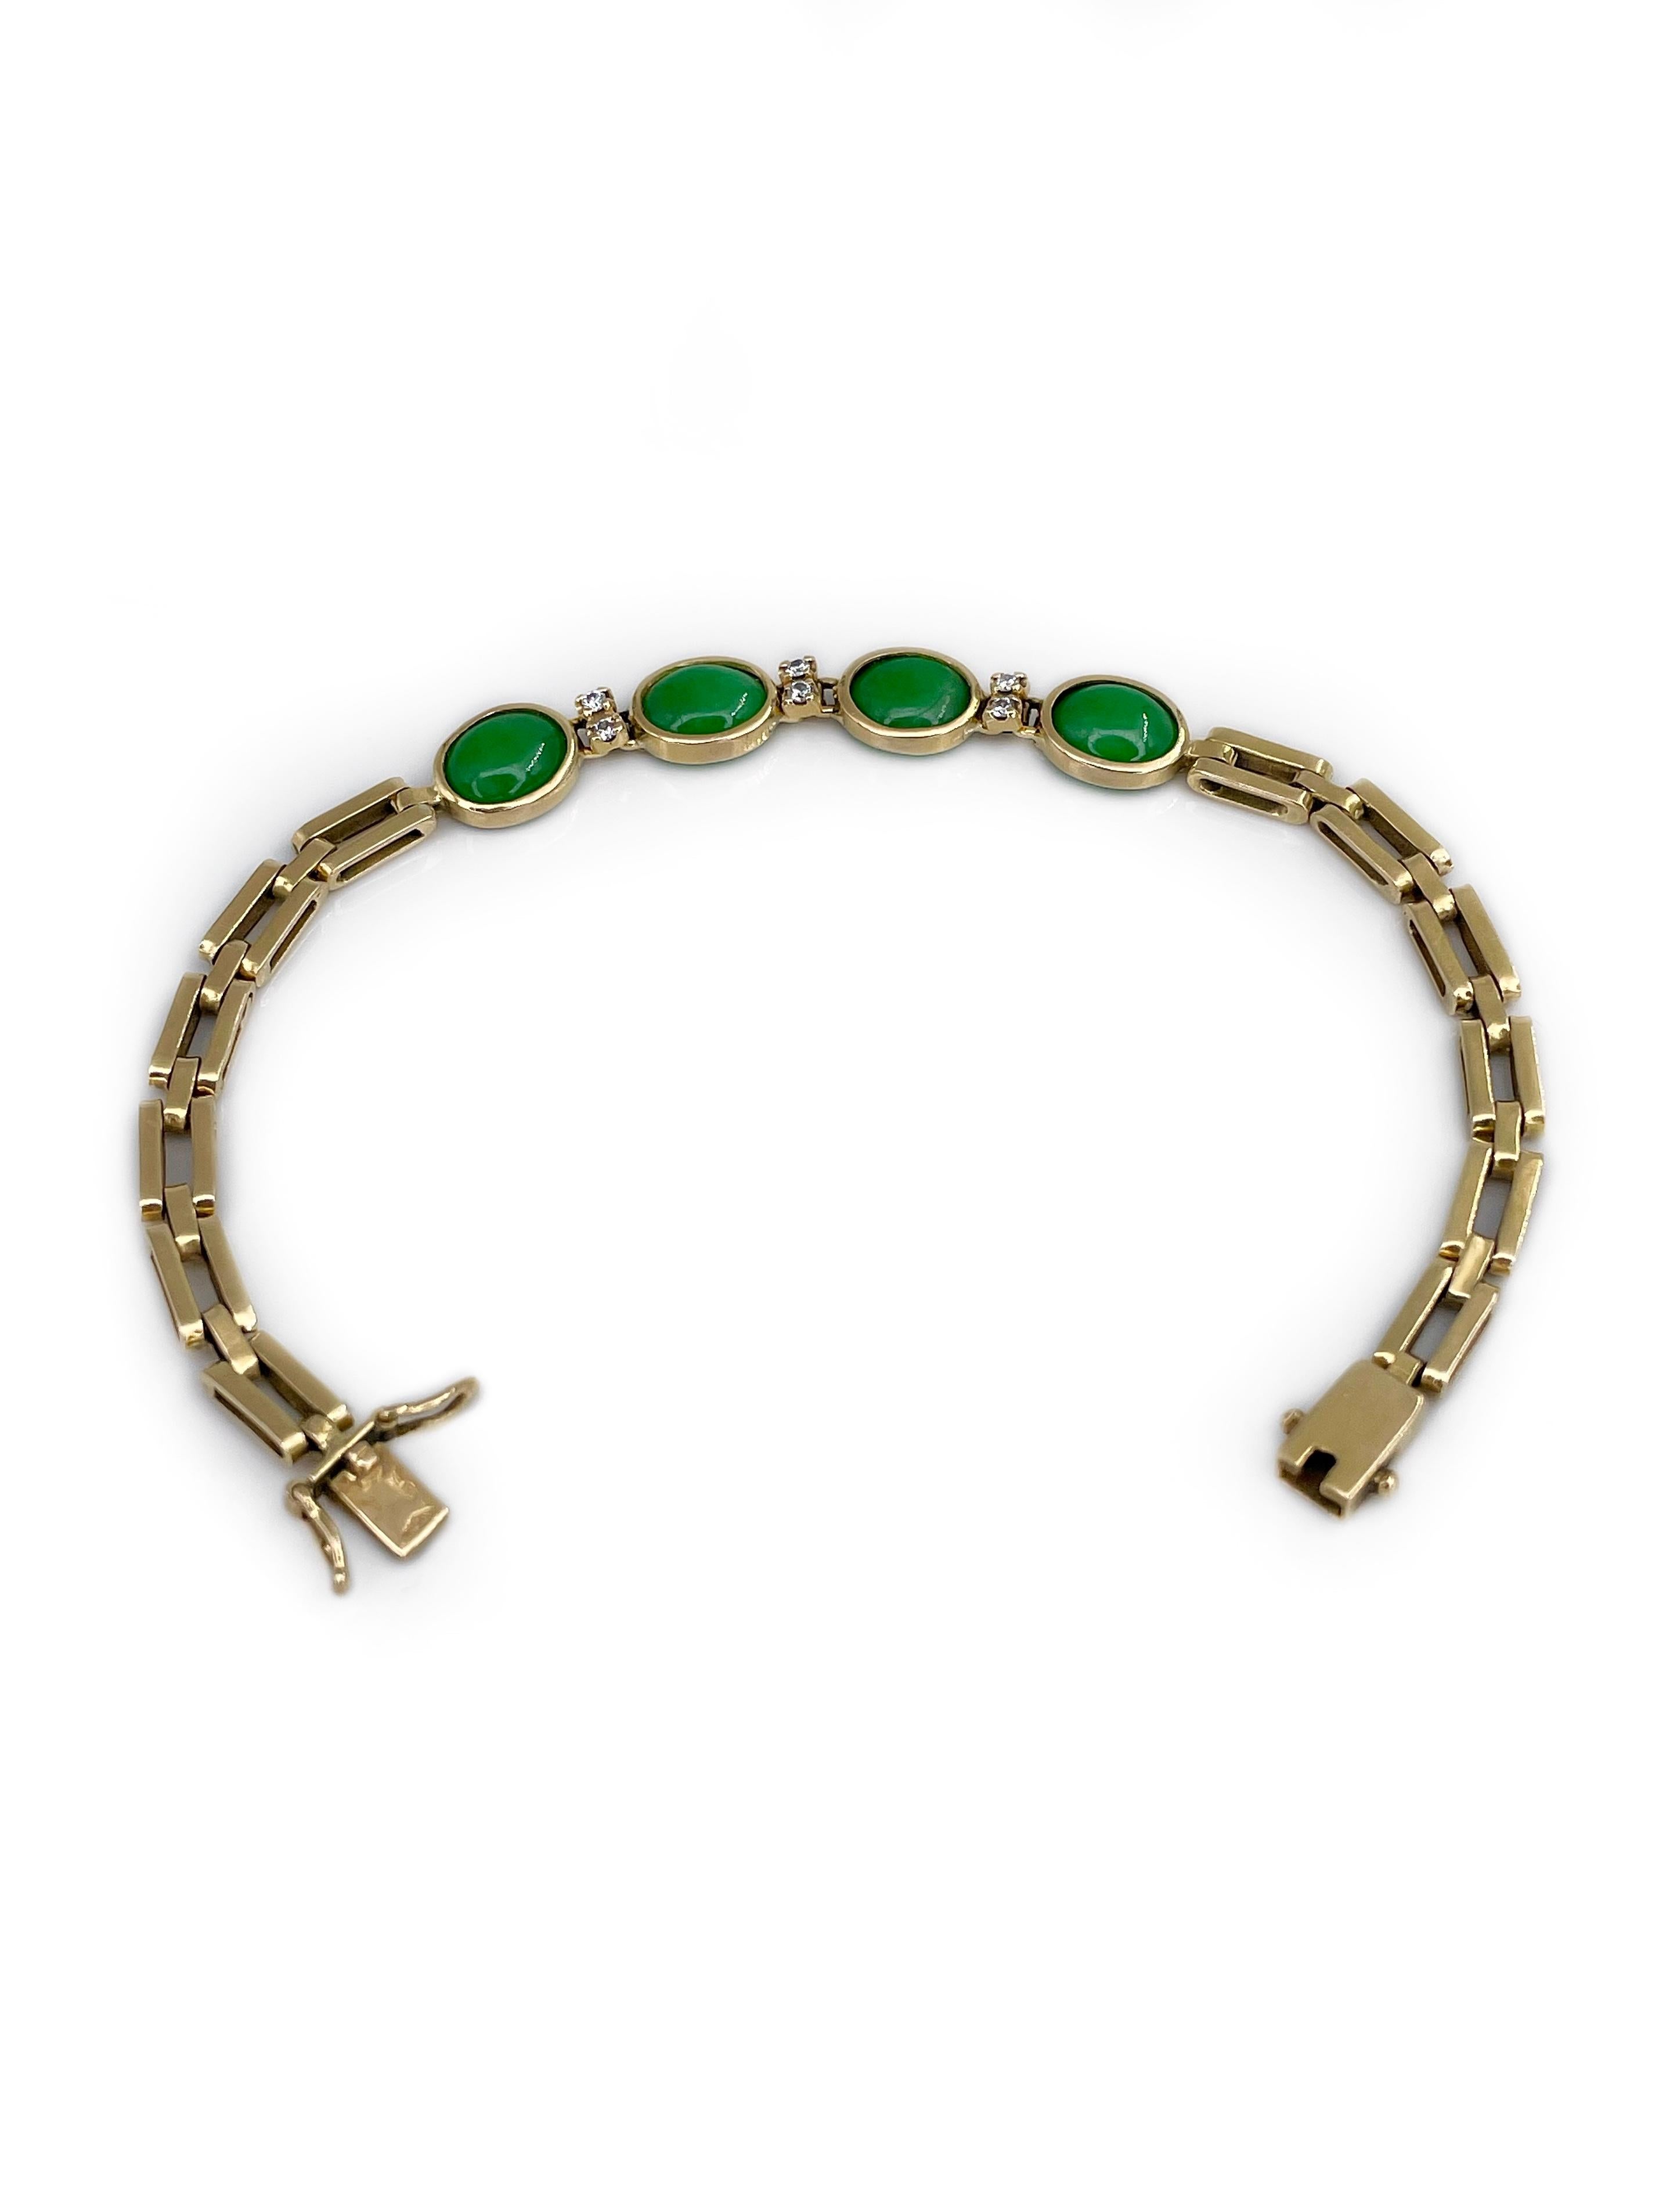 jade and gold bracelet vintage